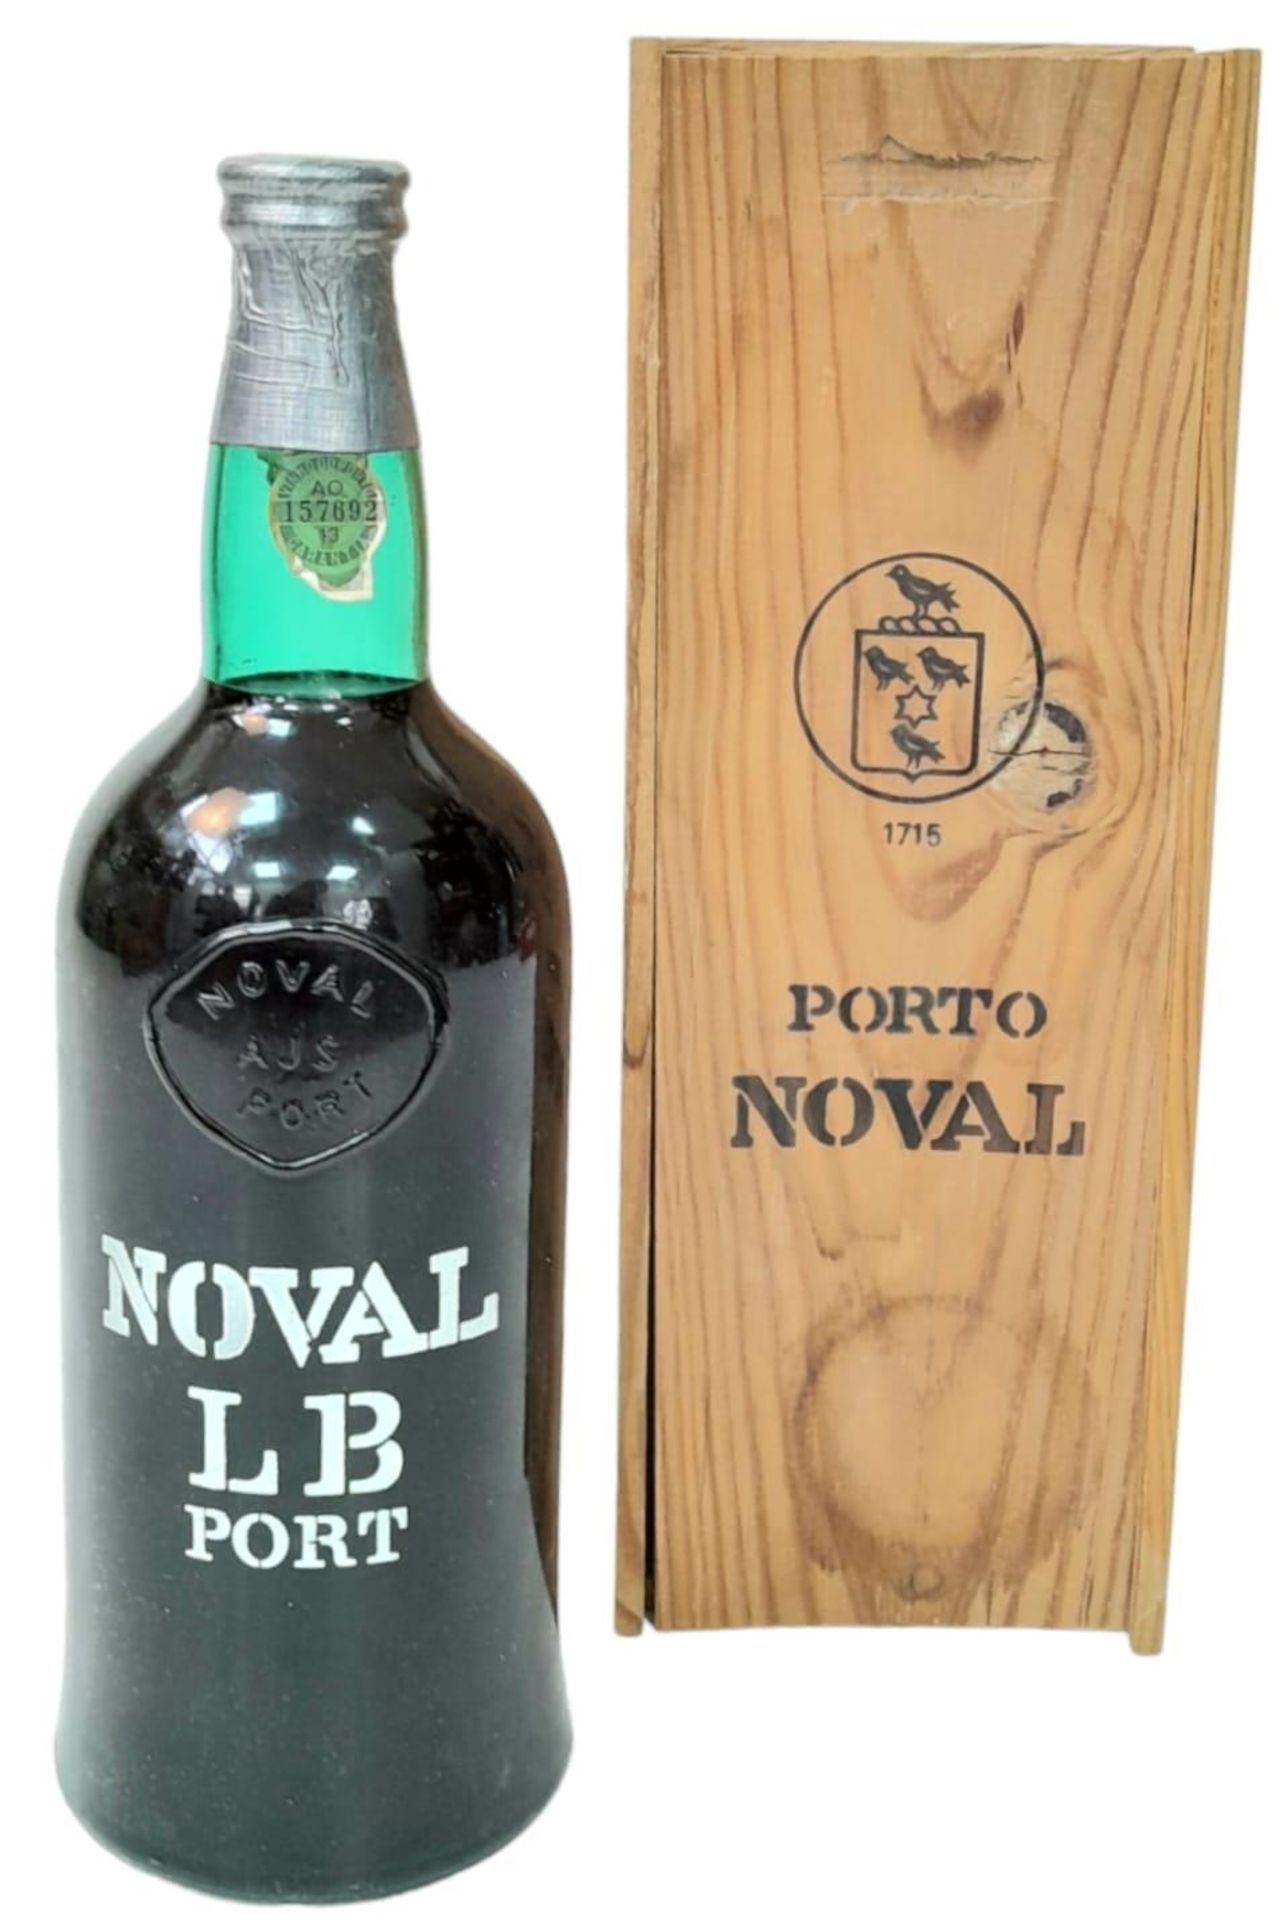 A Large Bottle of Noval LB Port in a Wooden Case - 150cl.